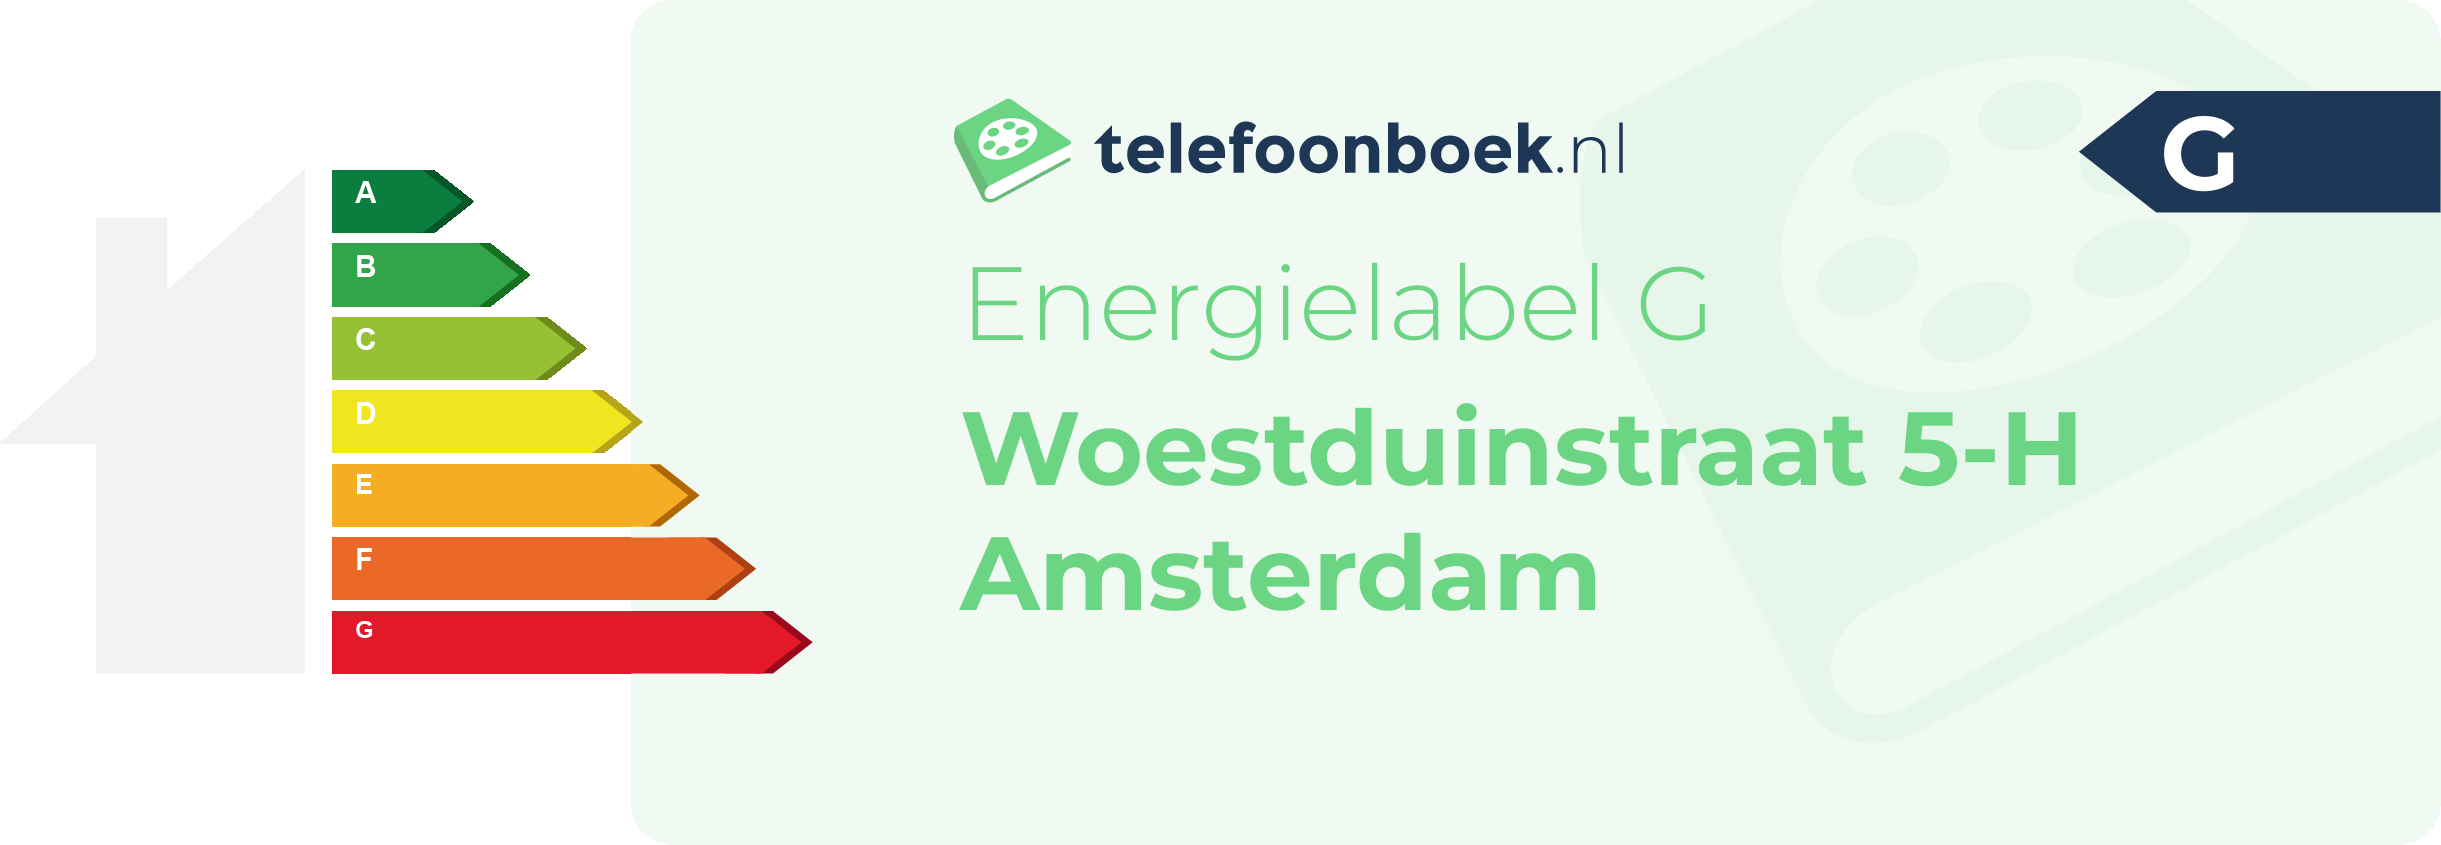 Energielabel Woestduinstraat 5-H Amsterdam